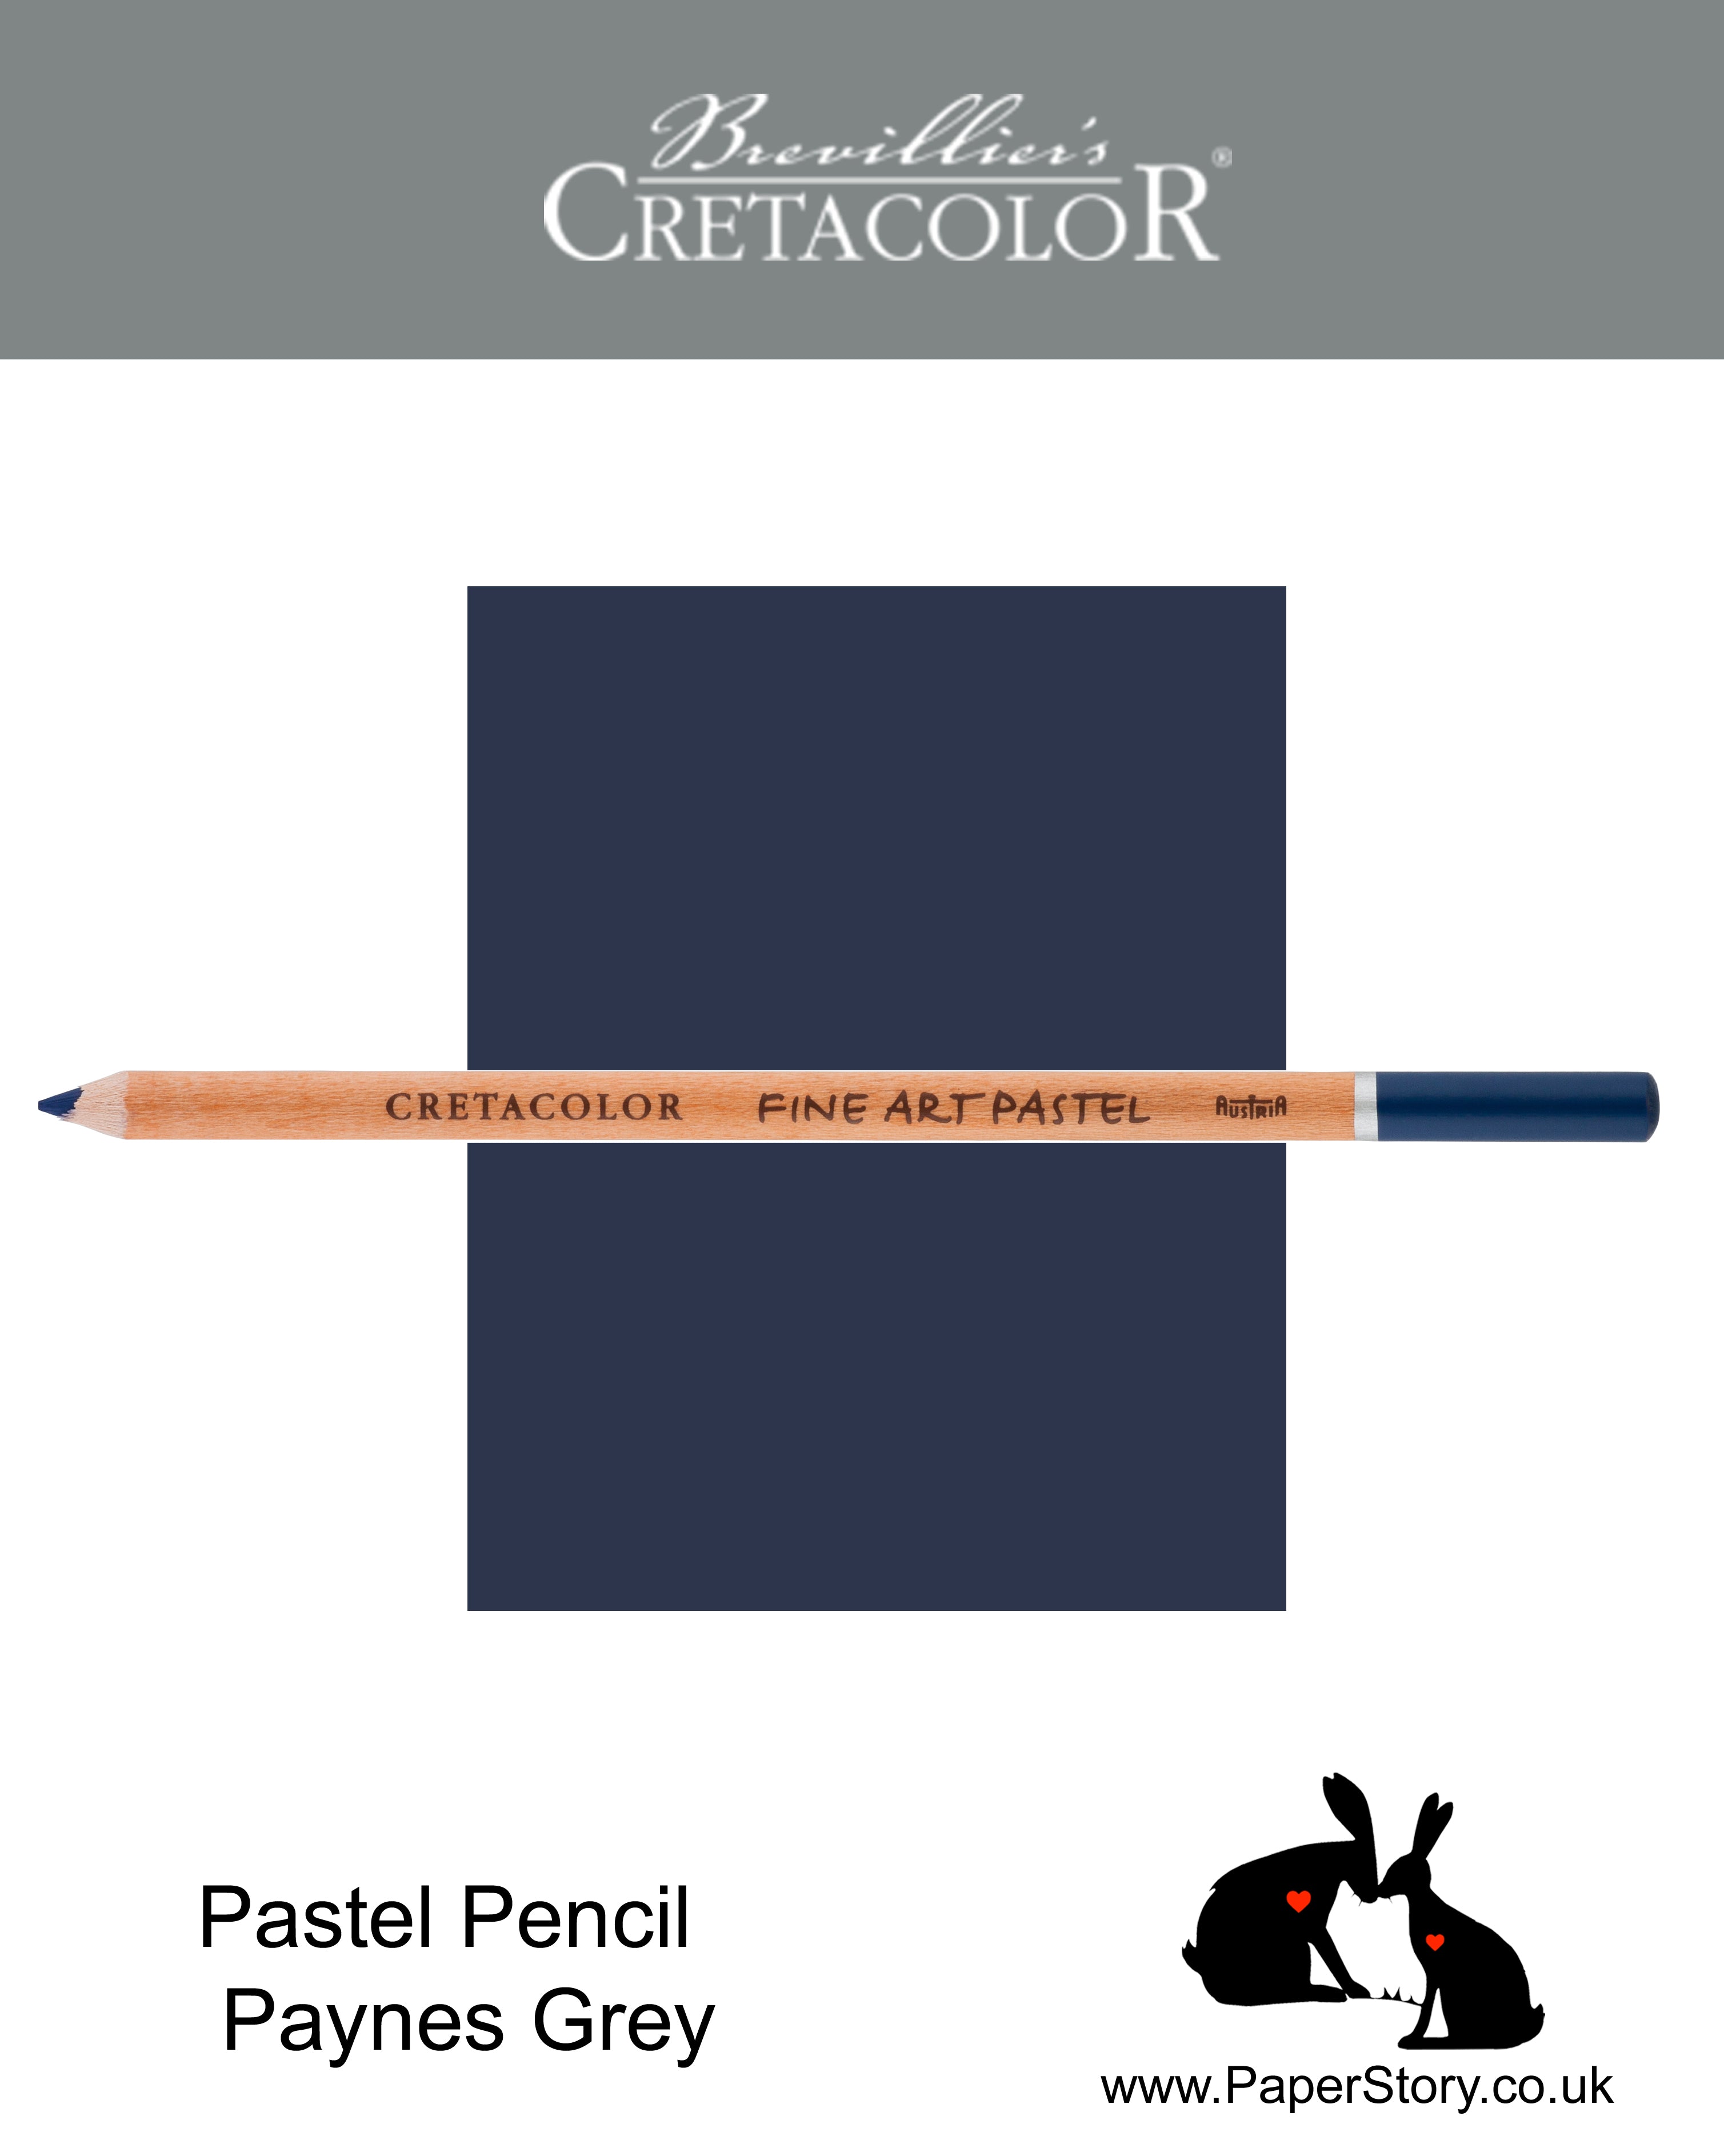 Cretacolor 472 39 Artists Pastel Pencil Paynes Grey